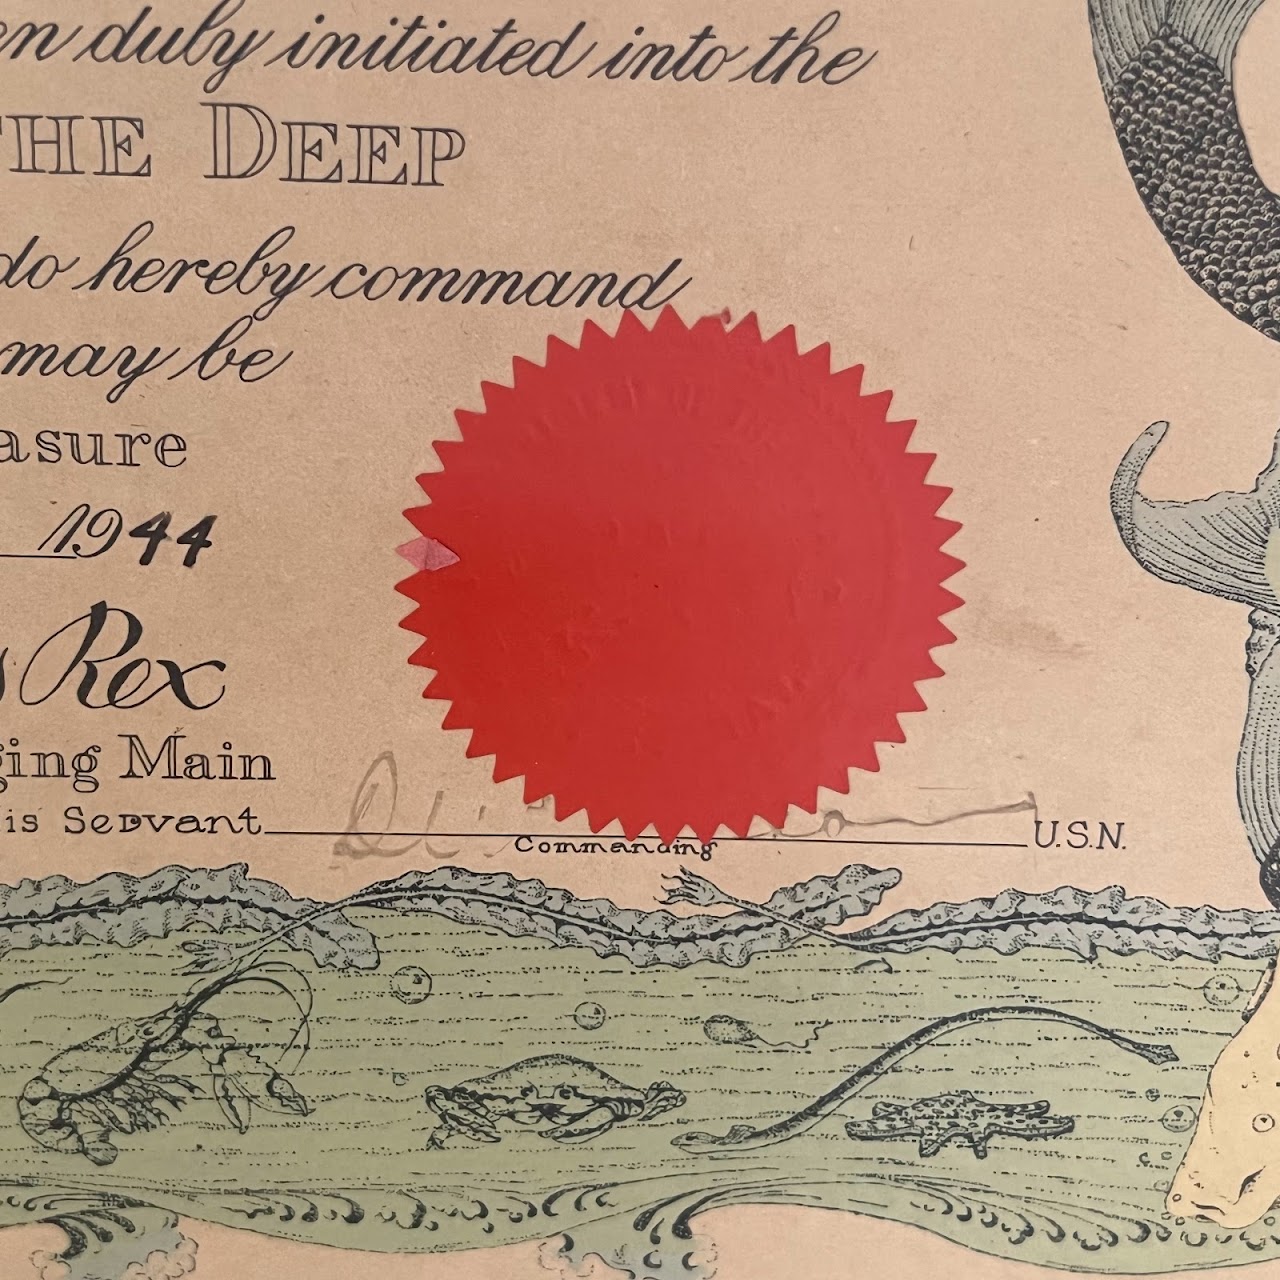 1944 Imperium Neptuni Regis Naval Certificate